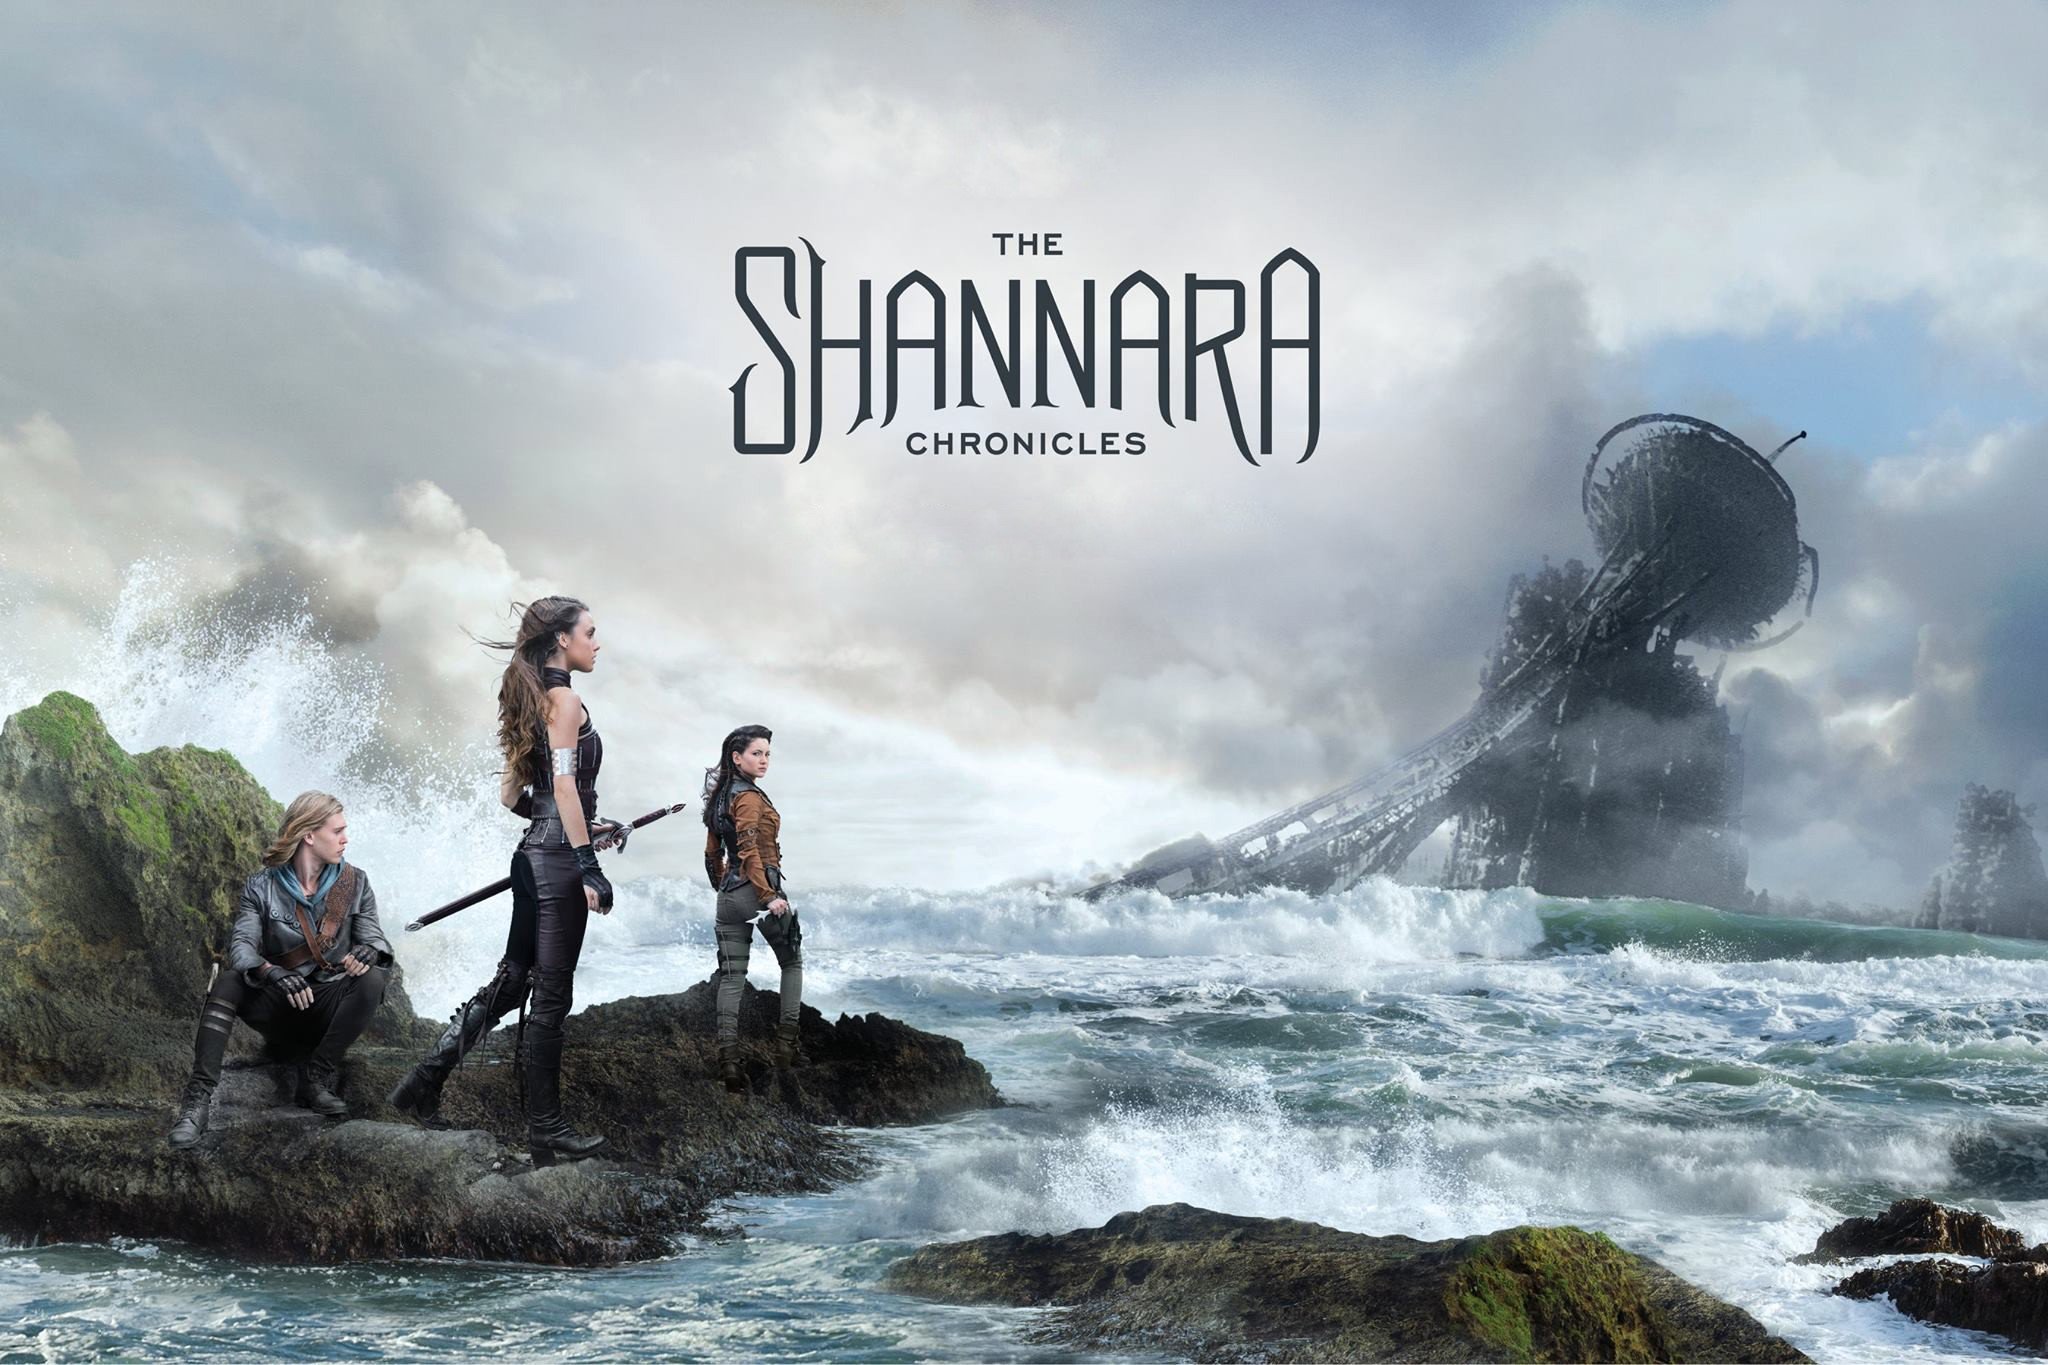 Shannara, The Shannara Chronicles (TV series), Poppy Drayton, Actress, Ivana Baquero Wallpaper